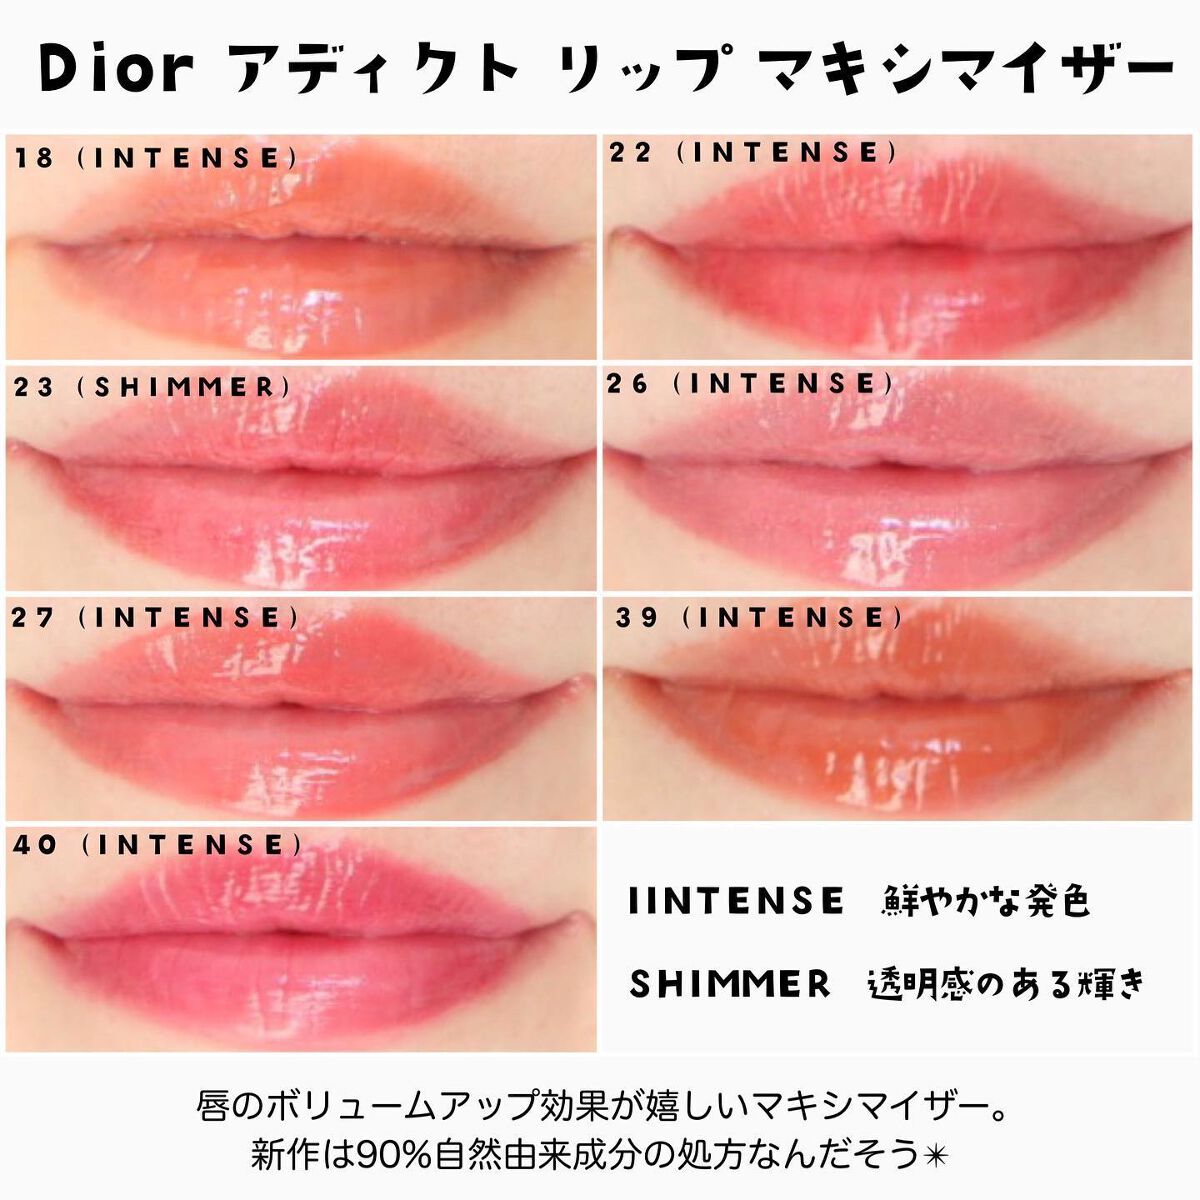 Dior ディオール リップマキシマイザー 027 - ベースメイク/化粧品